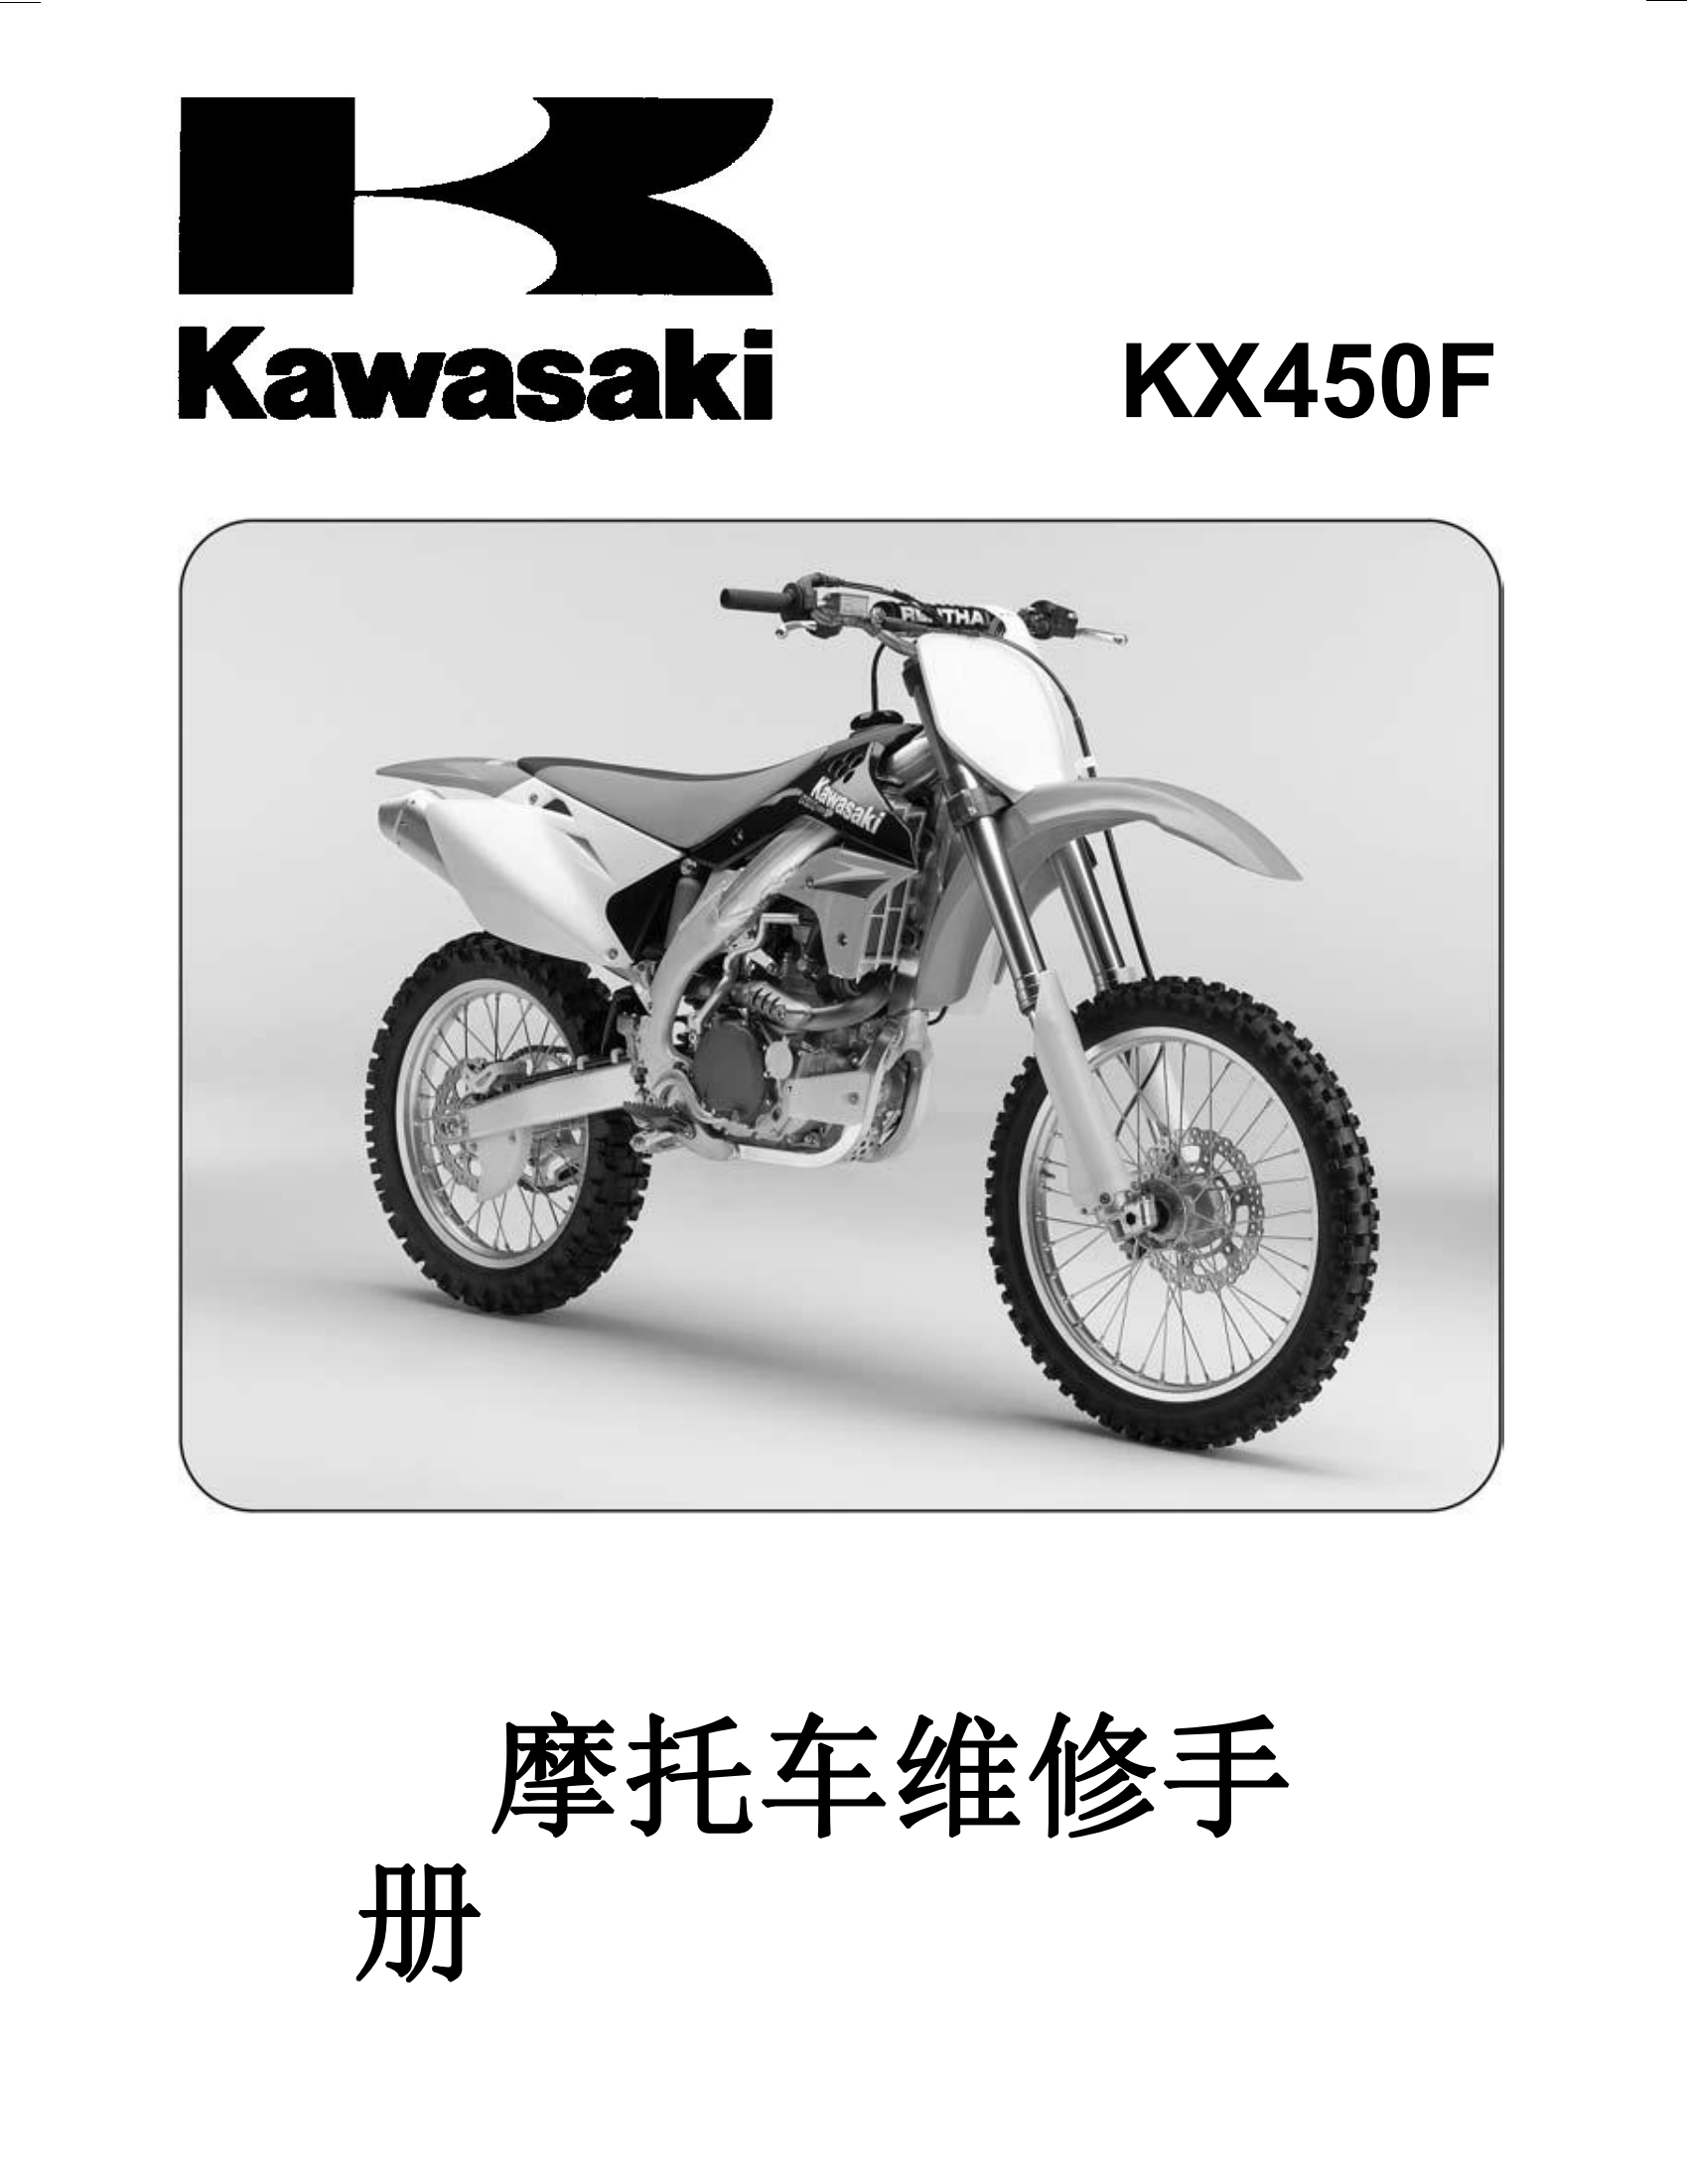 简体中文2006-2008年川崎kx450f维修手册kawasaki kx450f维修手册插图